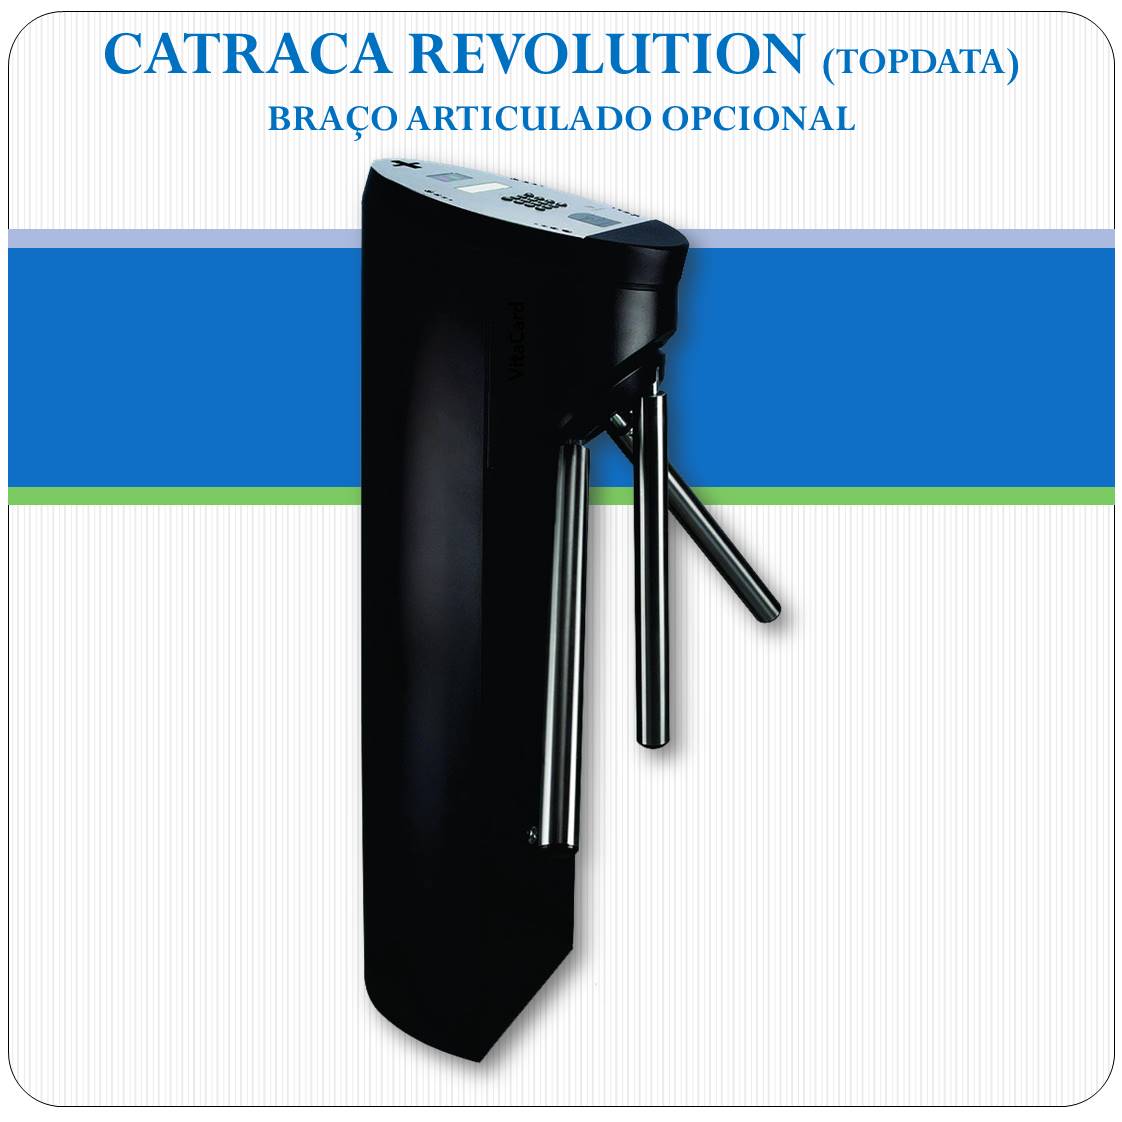 Catraca Revolution